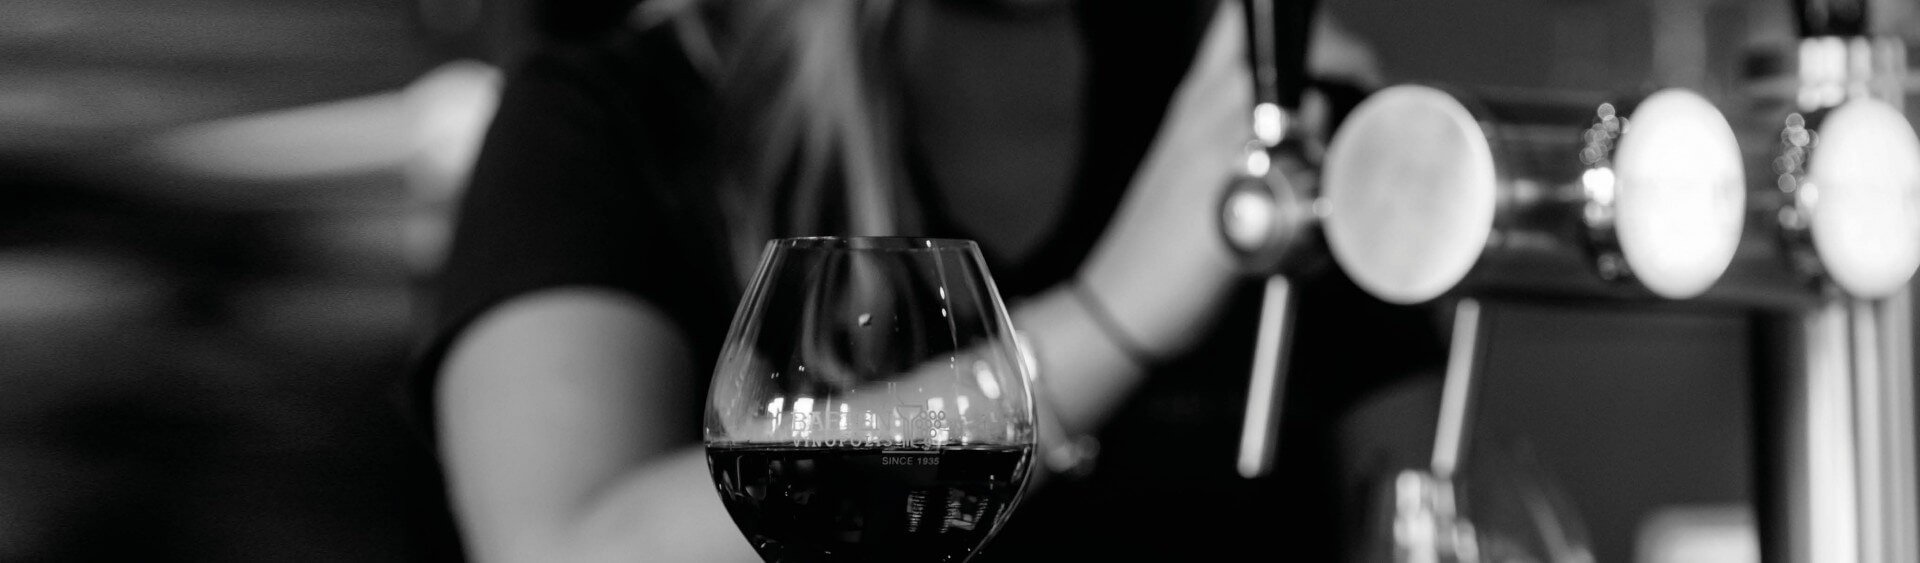 10 redenen waarom u zou kiezen voor wijn van het vat